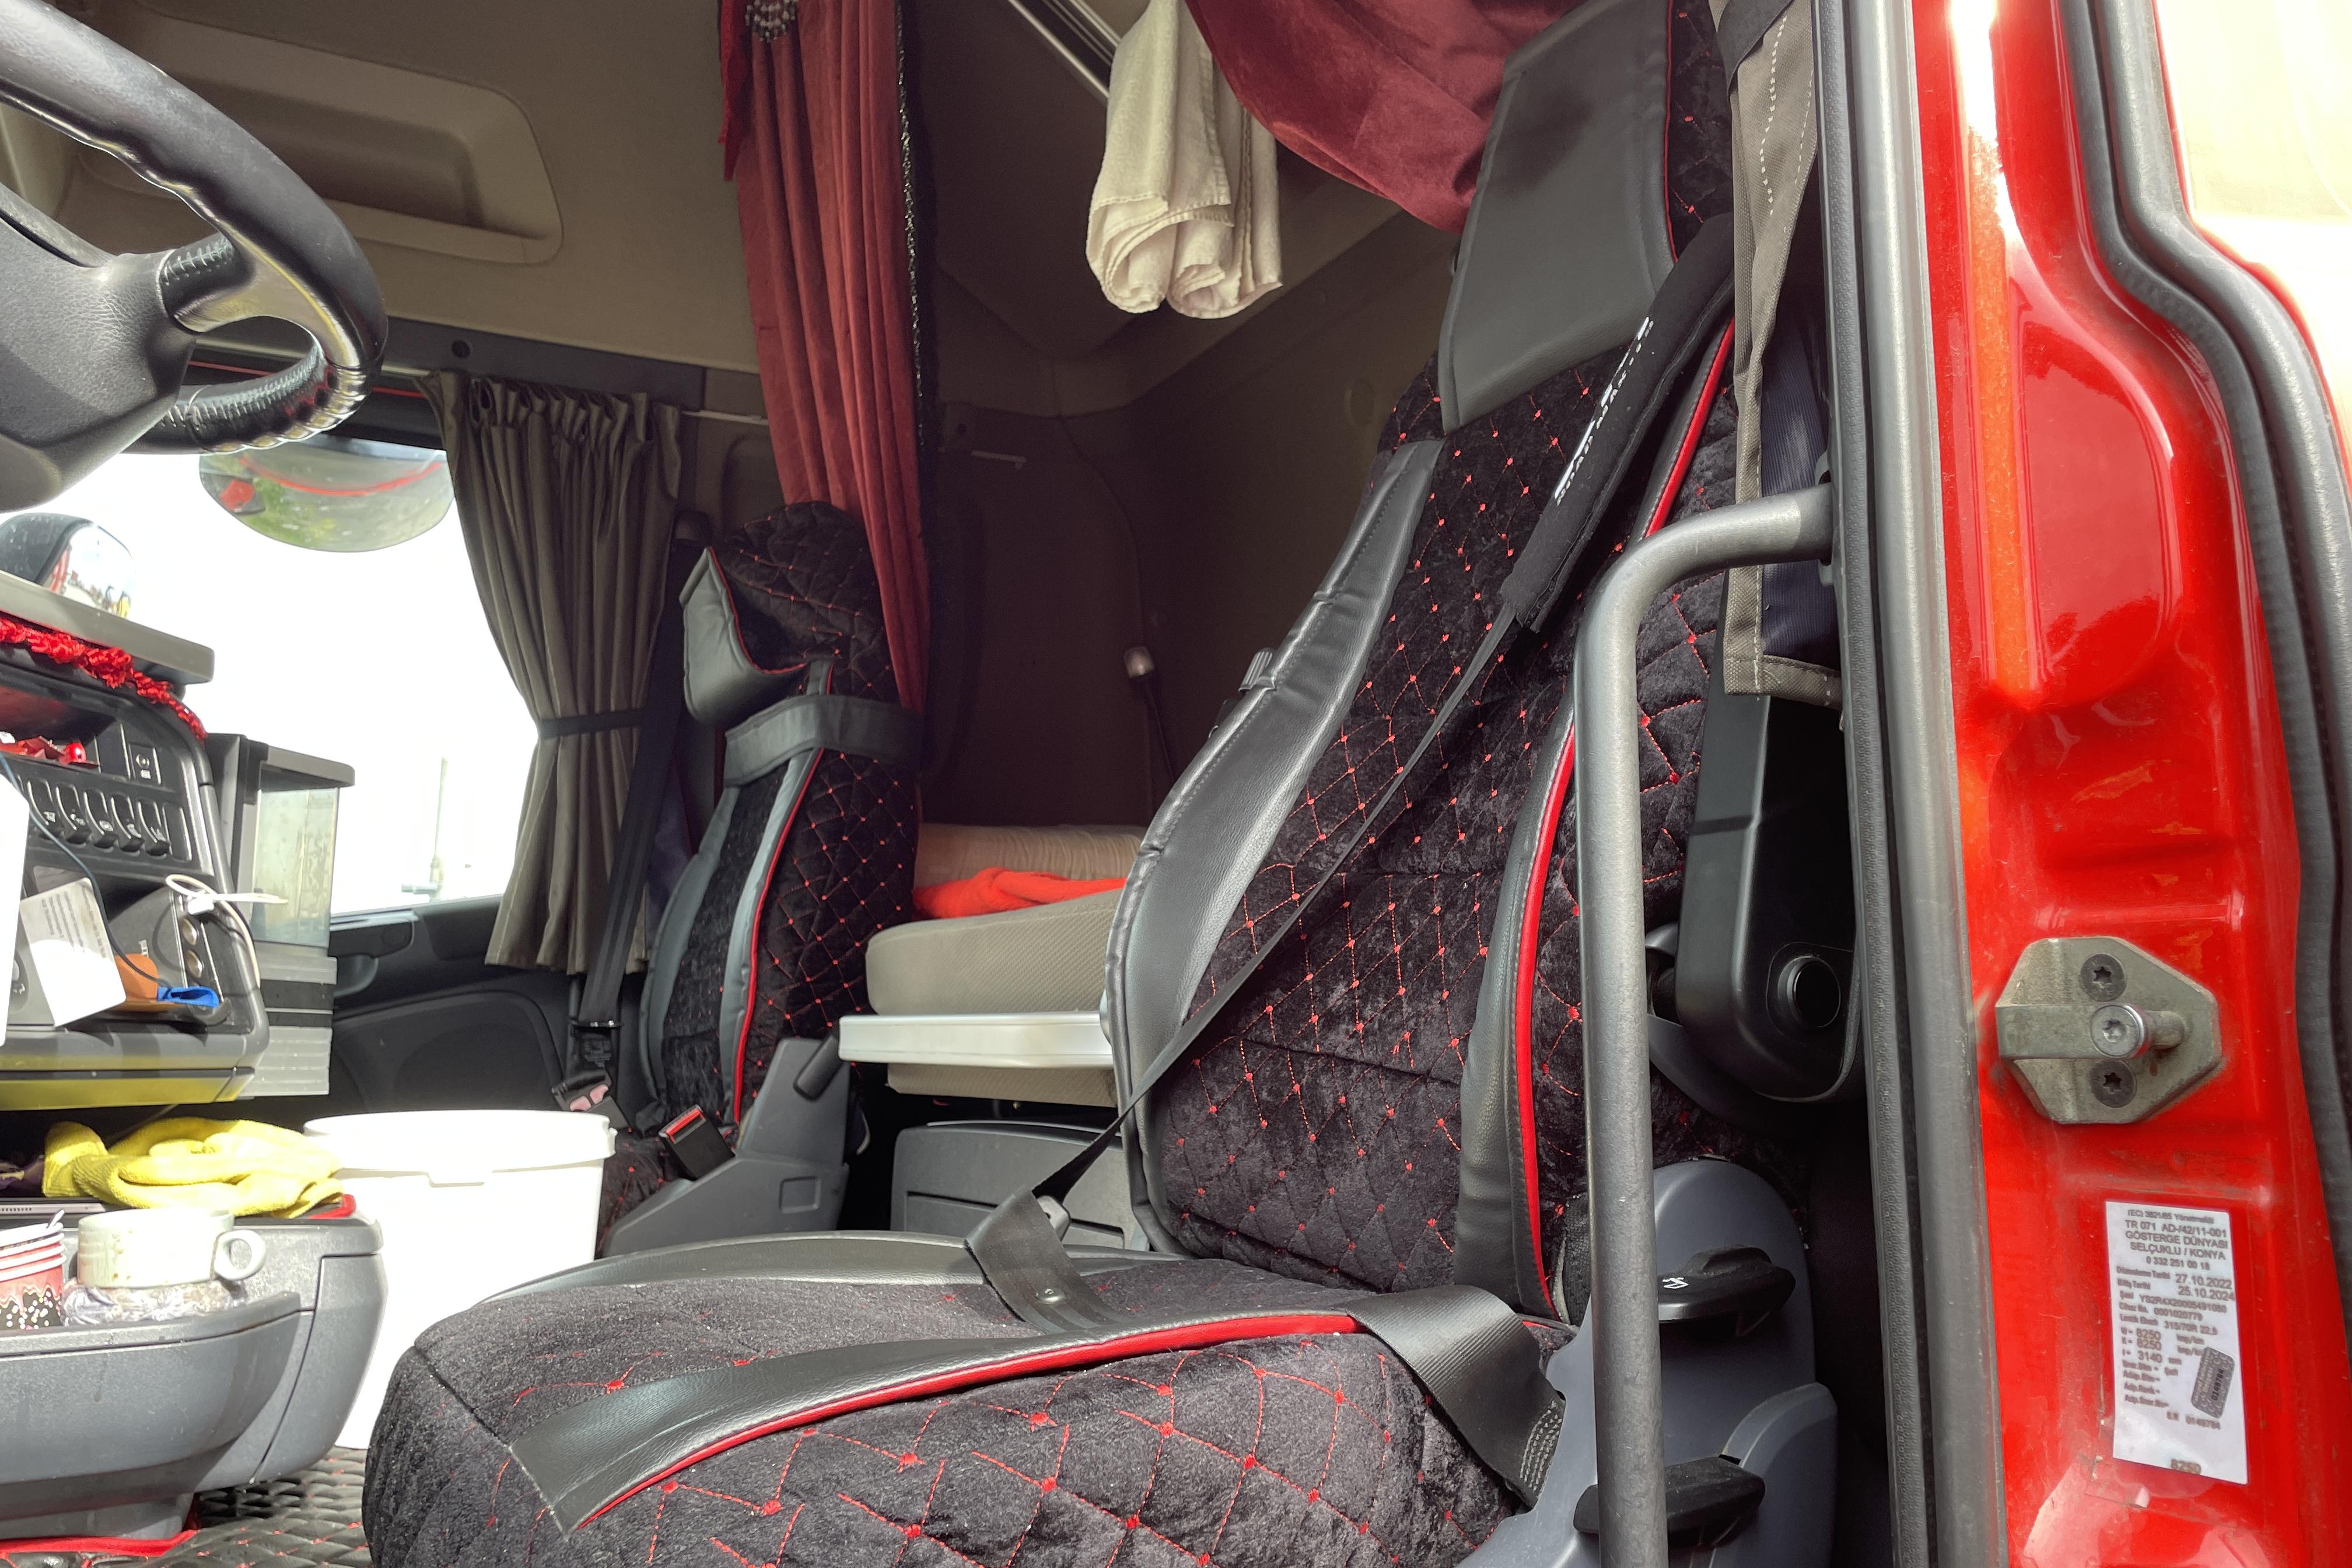 Scania R410 - 564 816 km - Automatyczna - czerwony - 2017